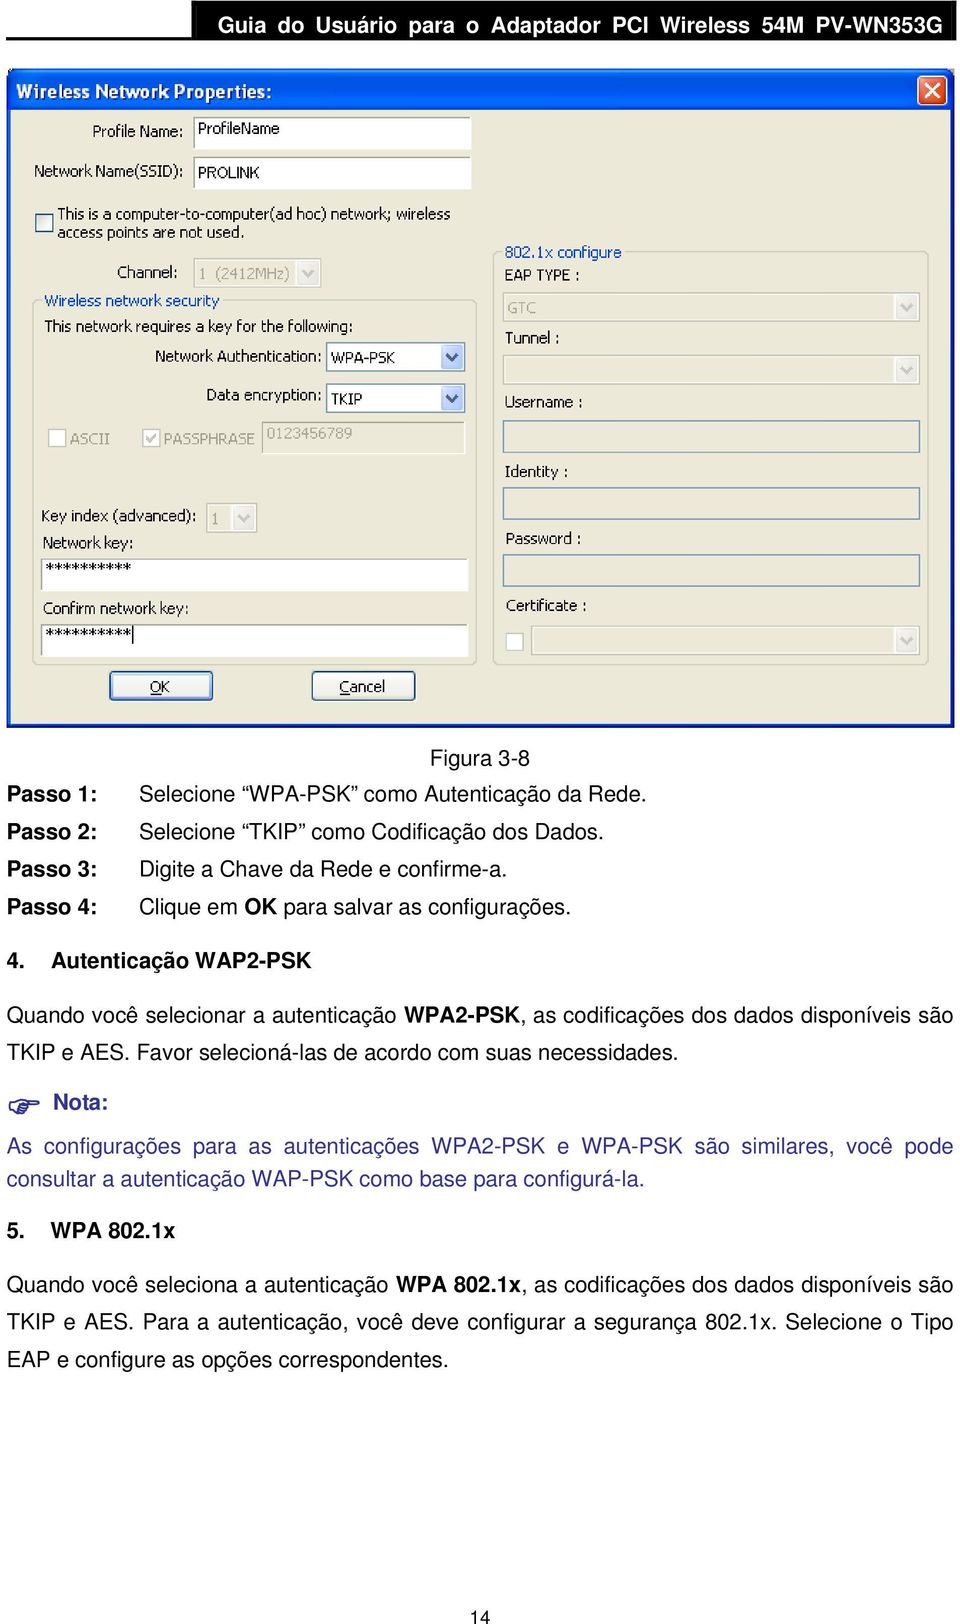 Autenticação WAP2-PSK Quando você selecionar a autenticação WPA2-PSK, as codificações dos dados disponíveis são TKIP e AES. Favor selecioná-las de acordo com suas necessidades.